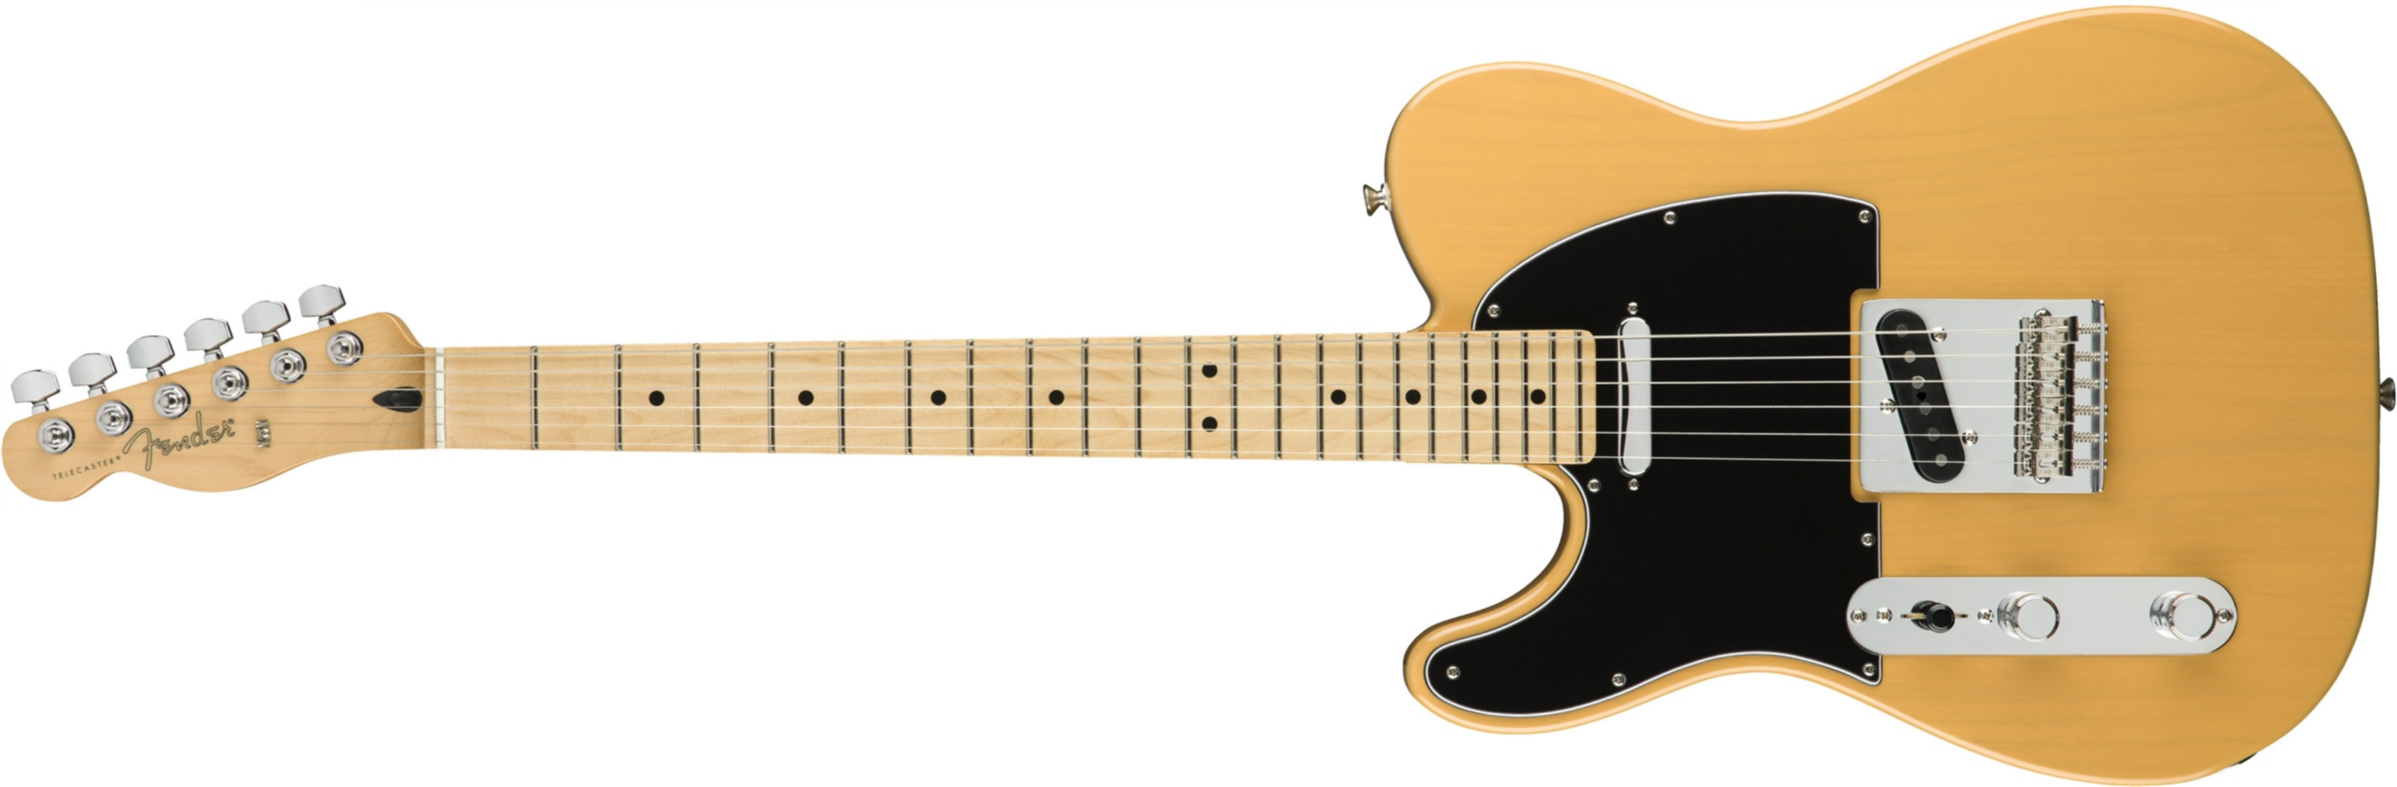 Fender Tele Player Lh Gaucher Mex 2s Mn - Butterscotch Blonde - Linkshandige elektrische gitaar - Main picture